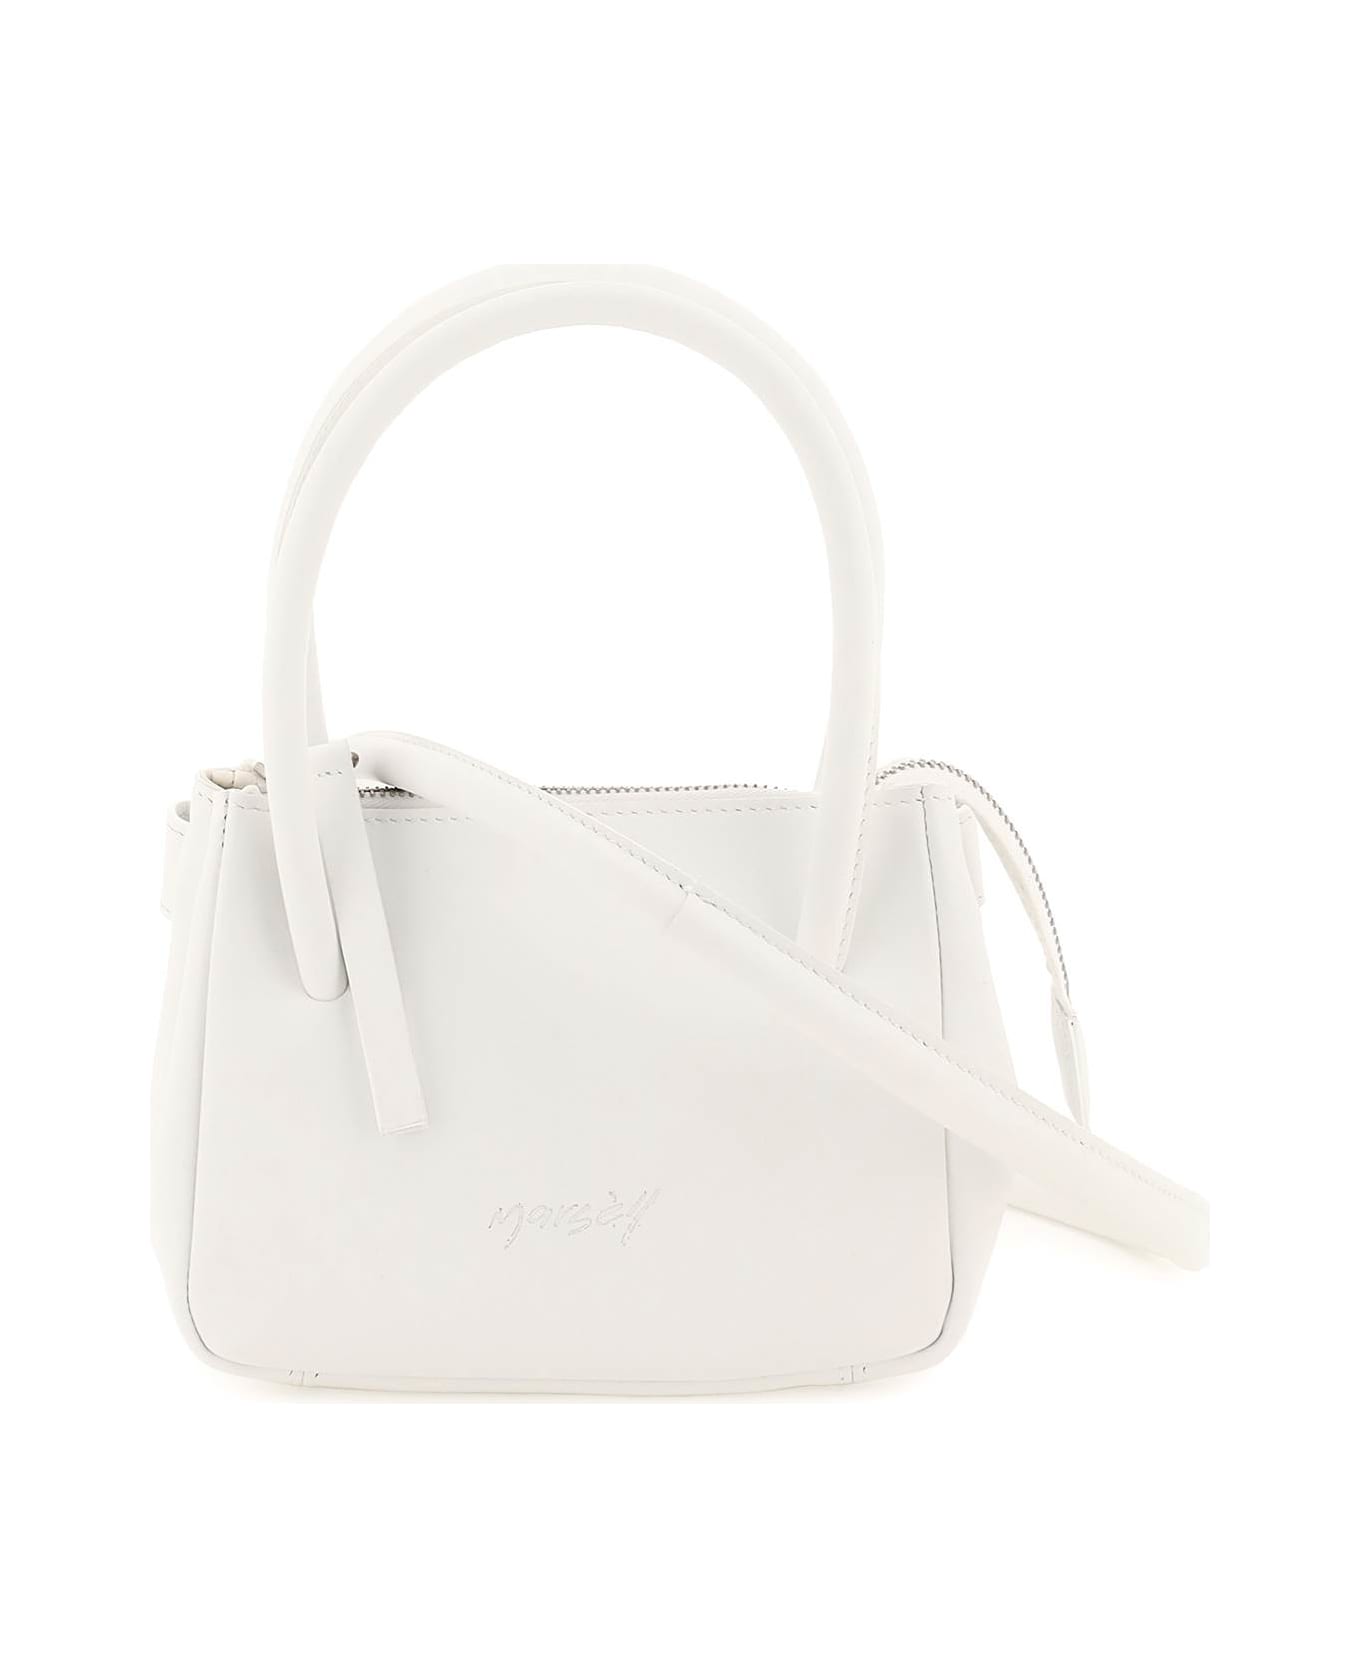 Marsell 'sacco Piccolo' Handbag - BIANCO OPTICAL (White)